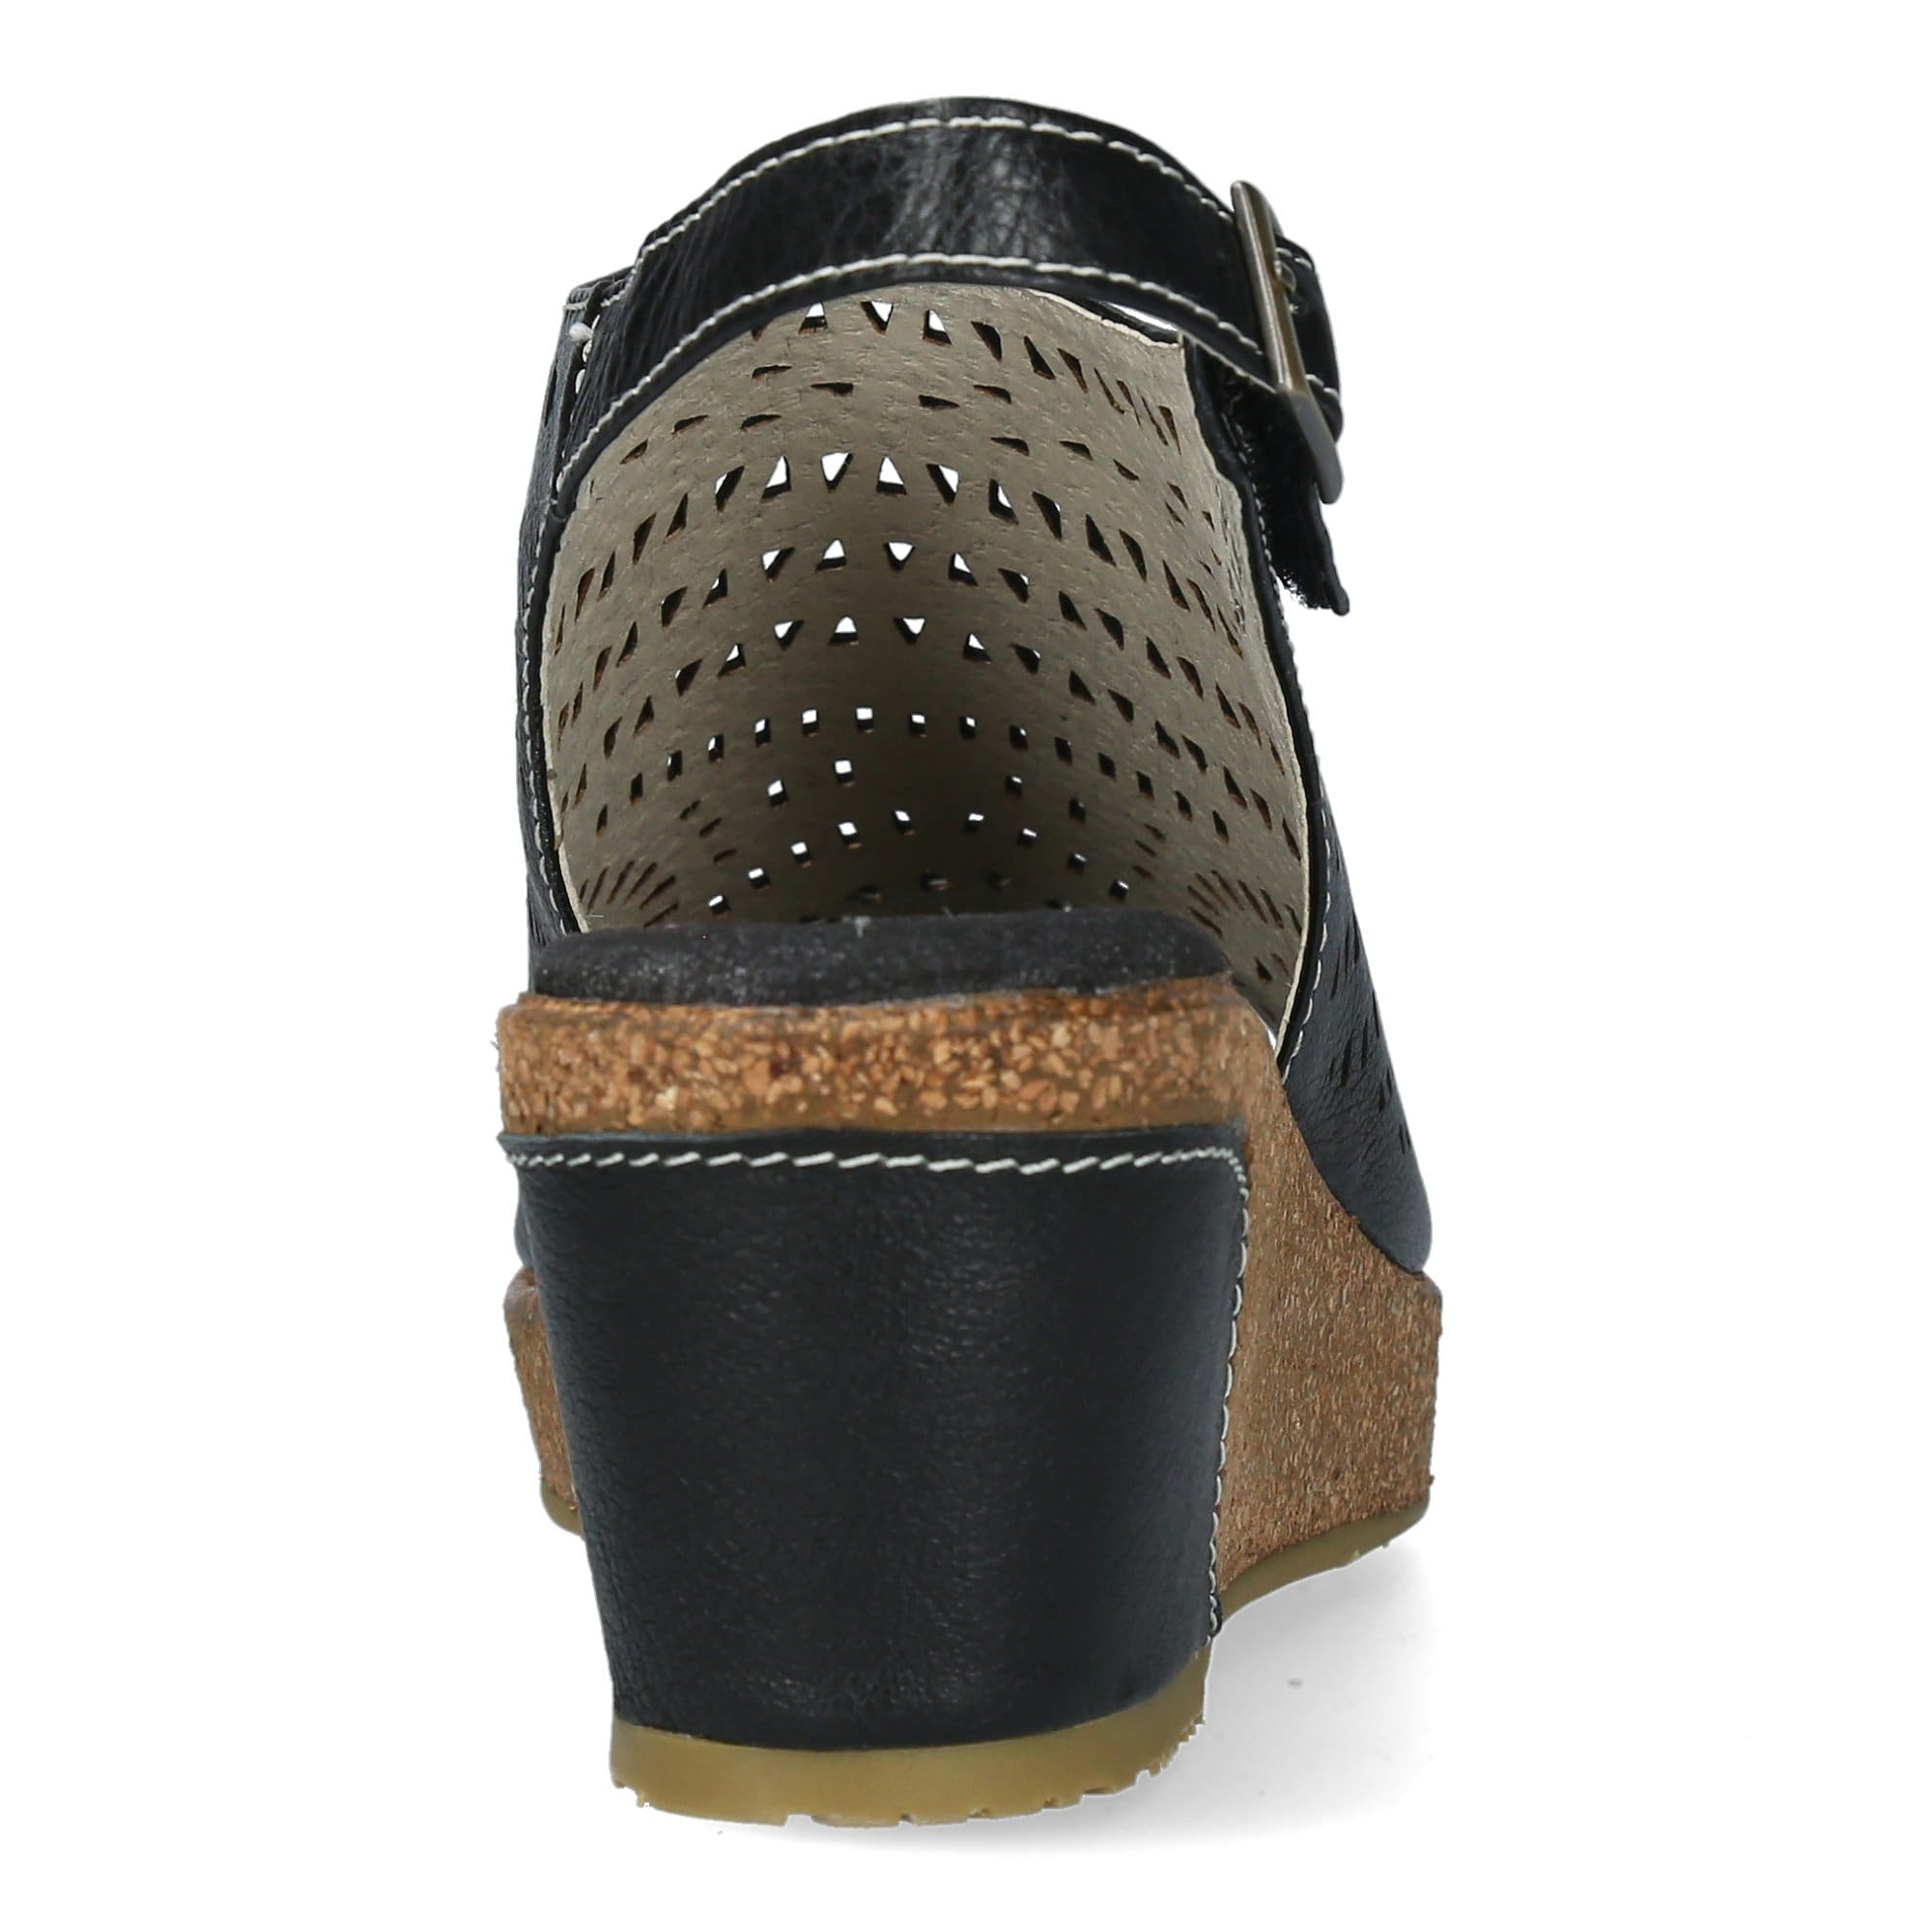 HACLEO 10 skor - Sandal